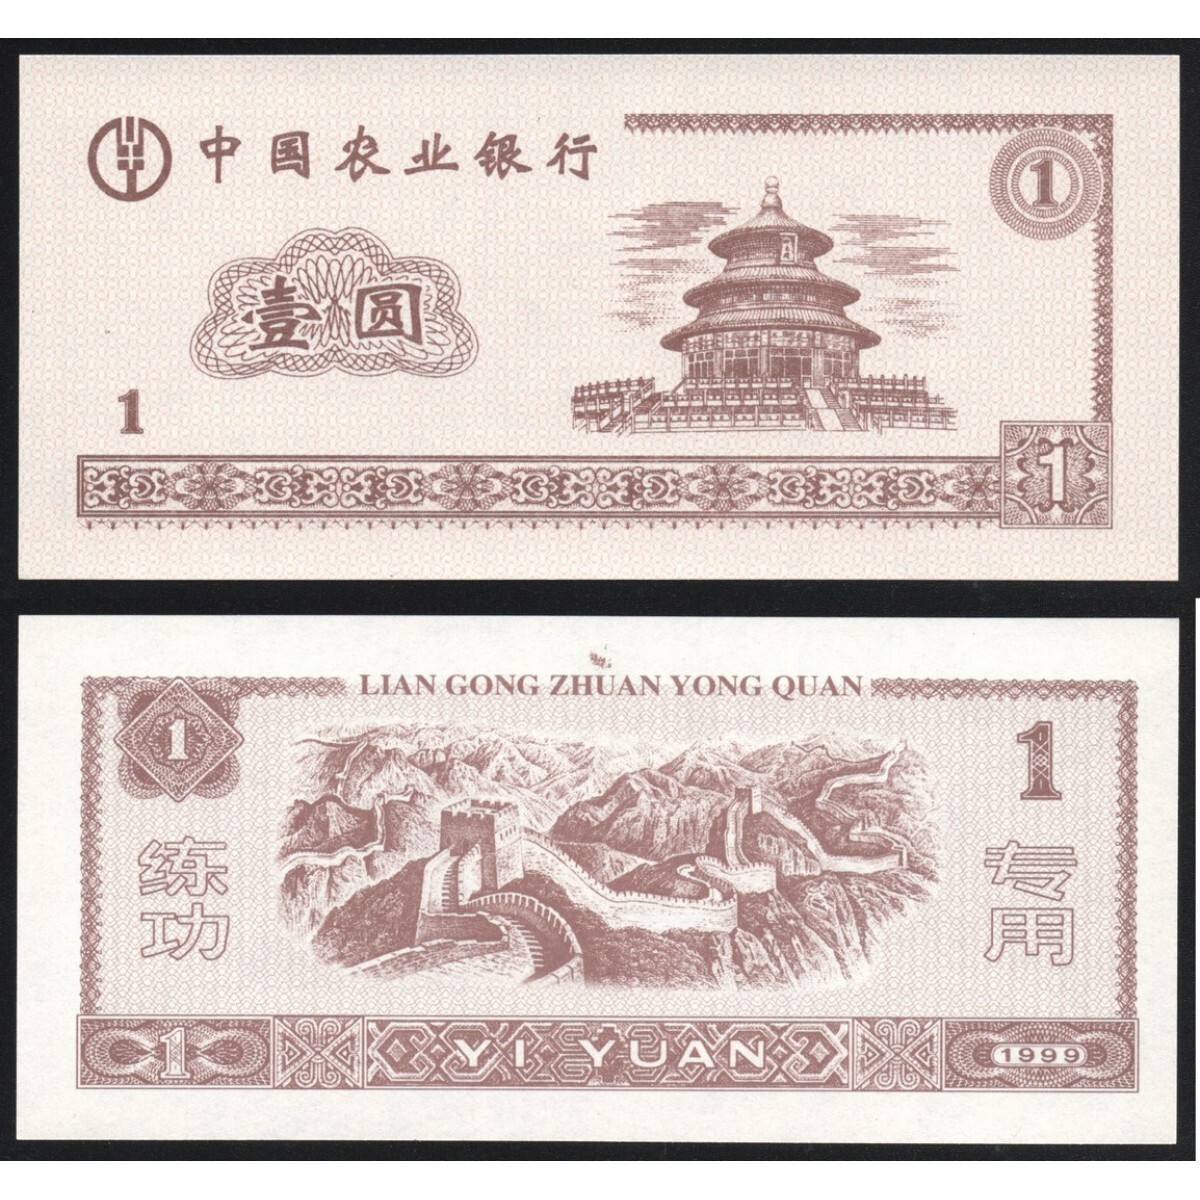 500 000 юаней в рублях. Китайские банкноты 1 Yuan 1999. Банкнота Китая Lian Gong. 1 Юань 1999 года. Китайская валюта в рублях.